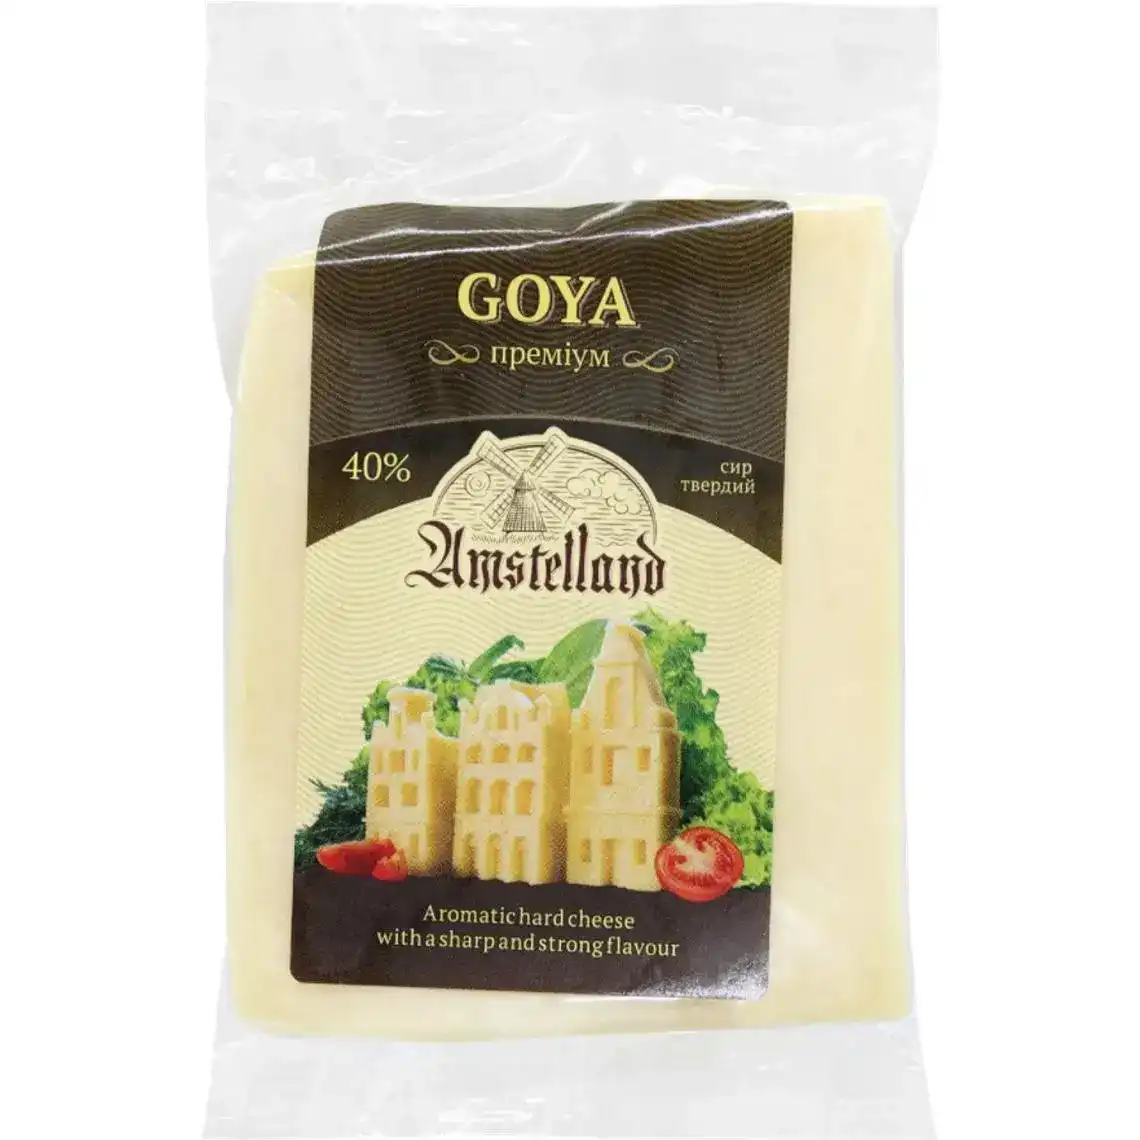 Сир Amstelland Goya 40%